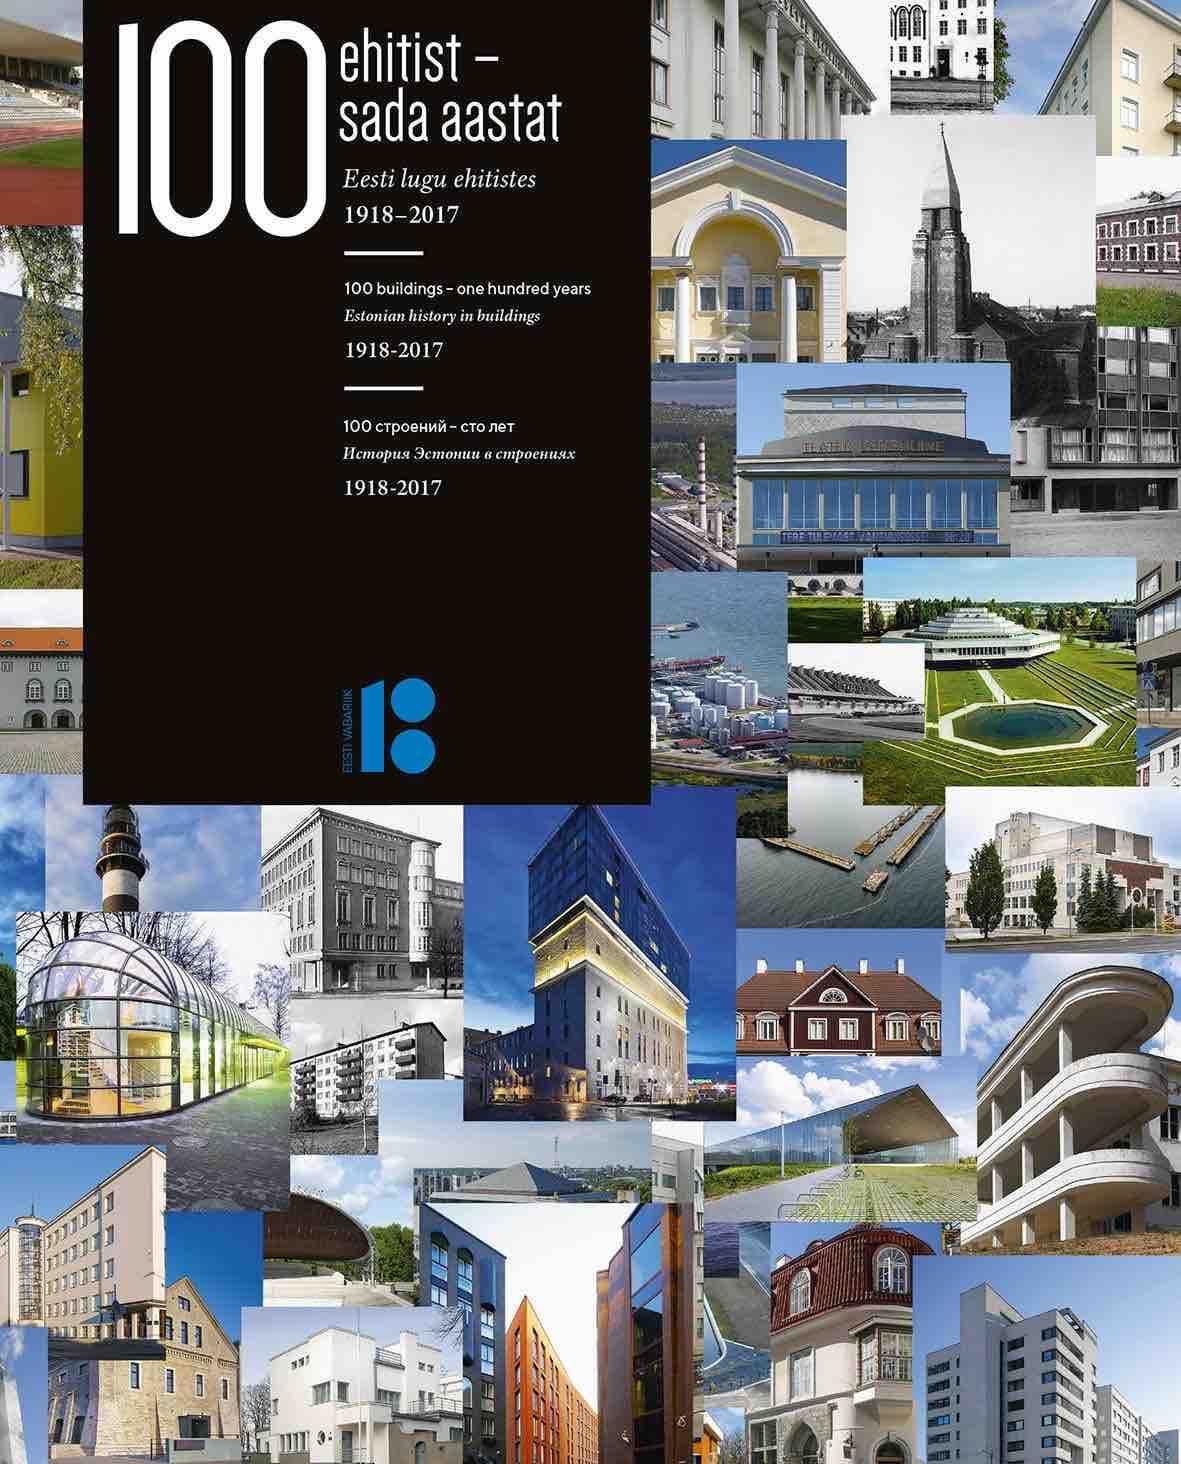 100 ehitist – sada aastat